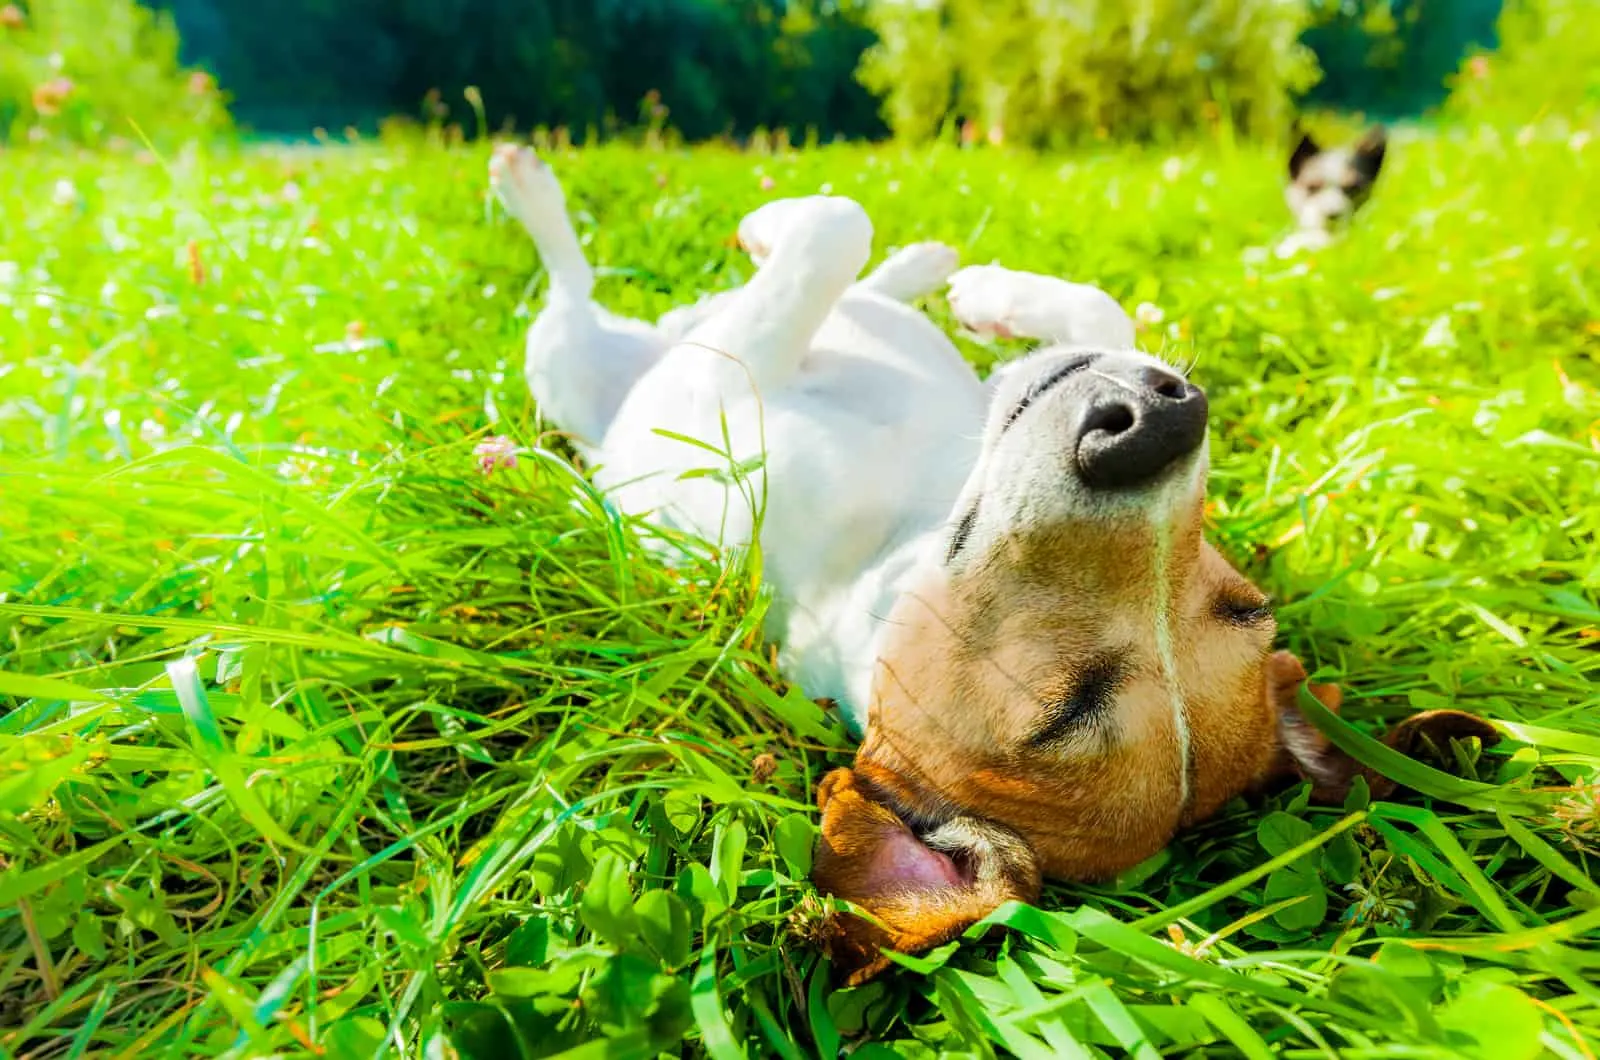 terrier lies in grass